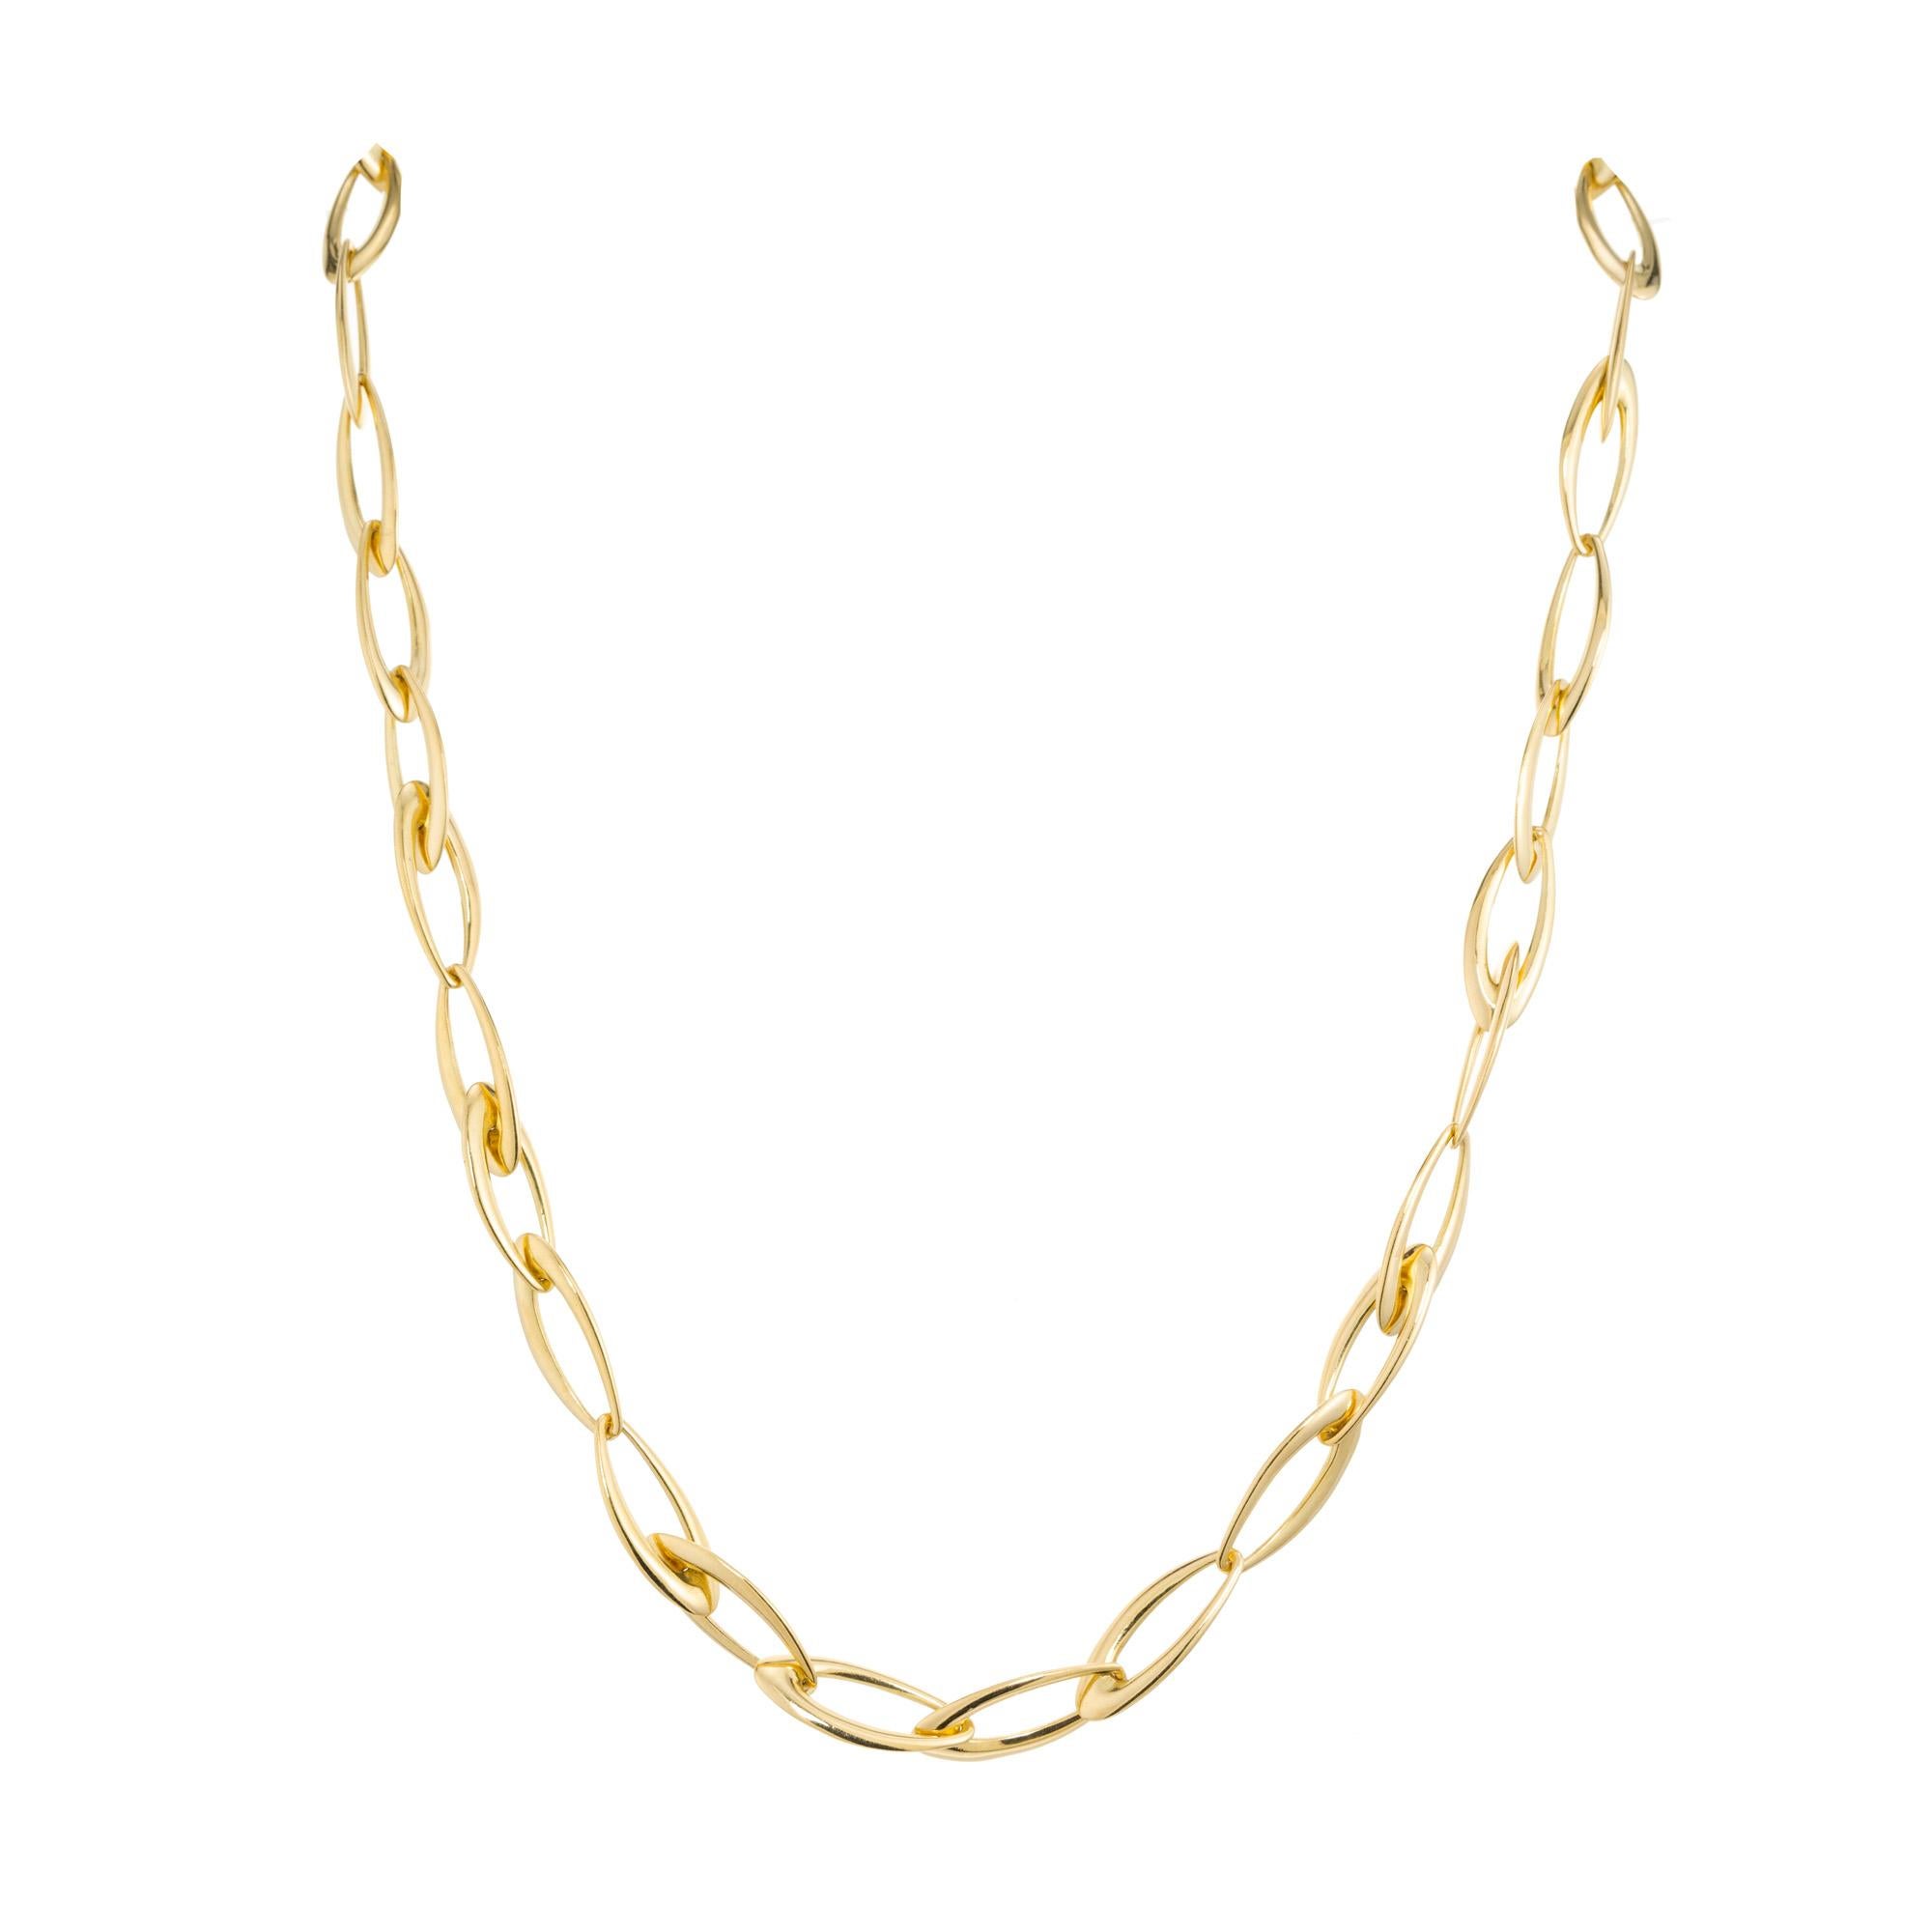 Ovale Gliederkette aus 18k Gelbgold. Von dem italienischen Designer Superoro stammt diese ovale 18-Zoll-Halskette aus 18-karätigem Gelbgold. Die Schließe ist eine Fortsetzung der ovalen Glieder.

18k Gelbgold 
34,9 Gramm
Gütesiegel: hergestellt in